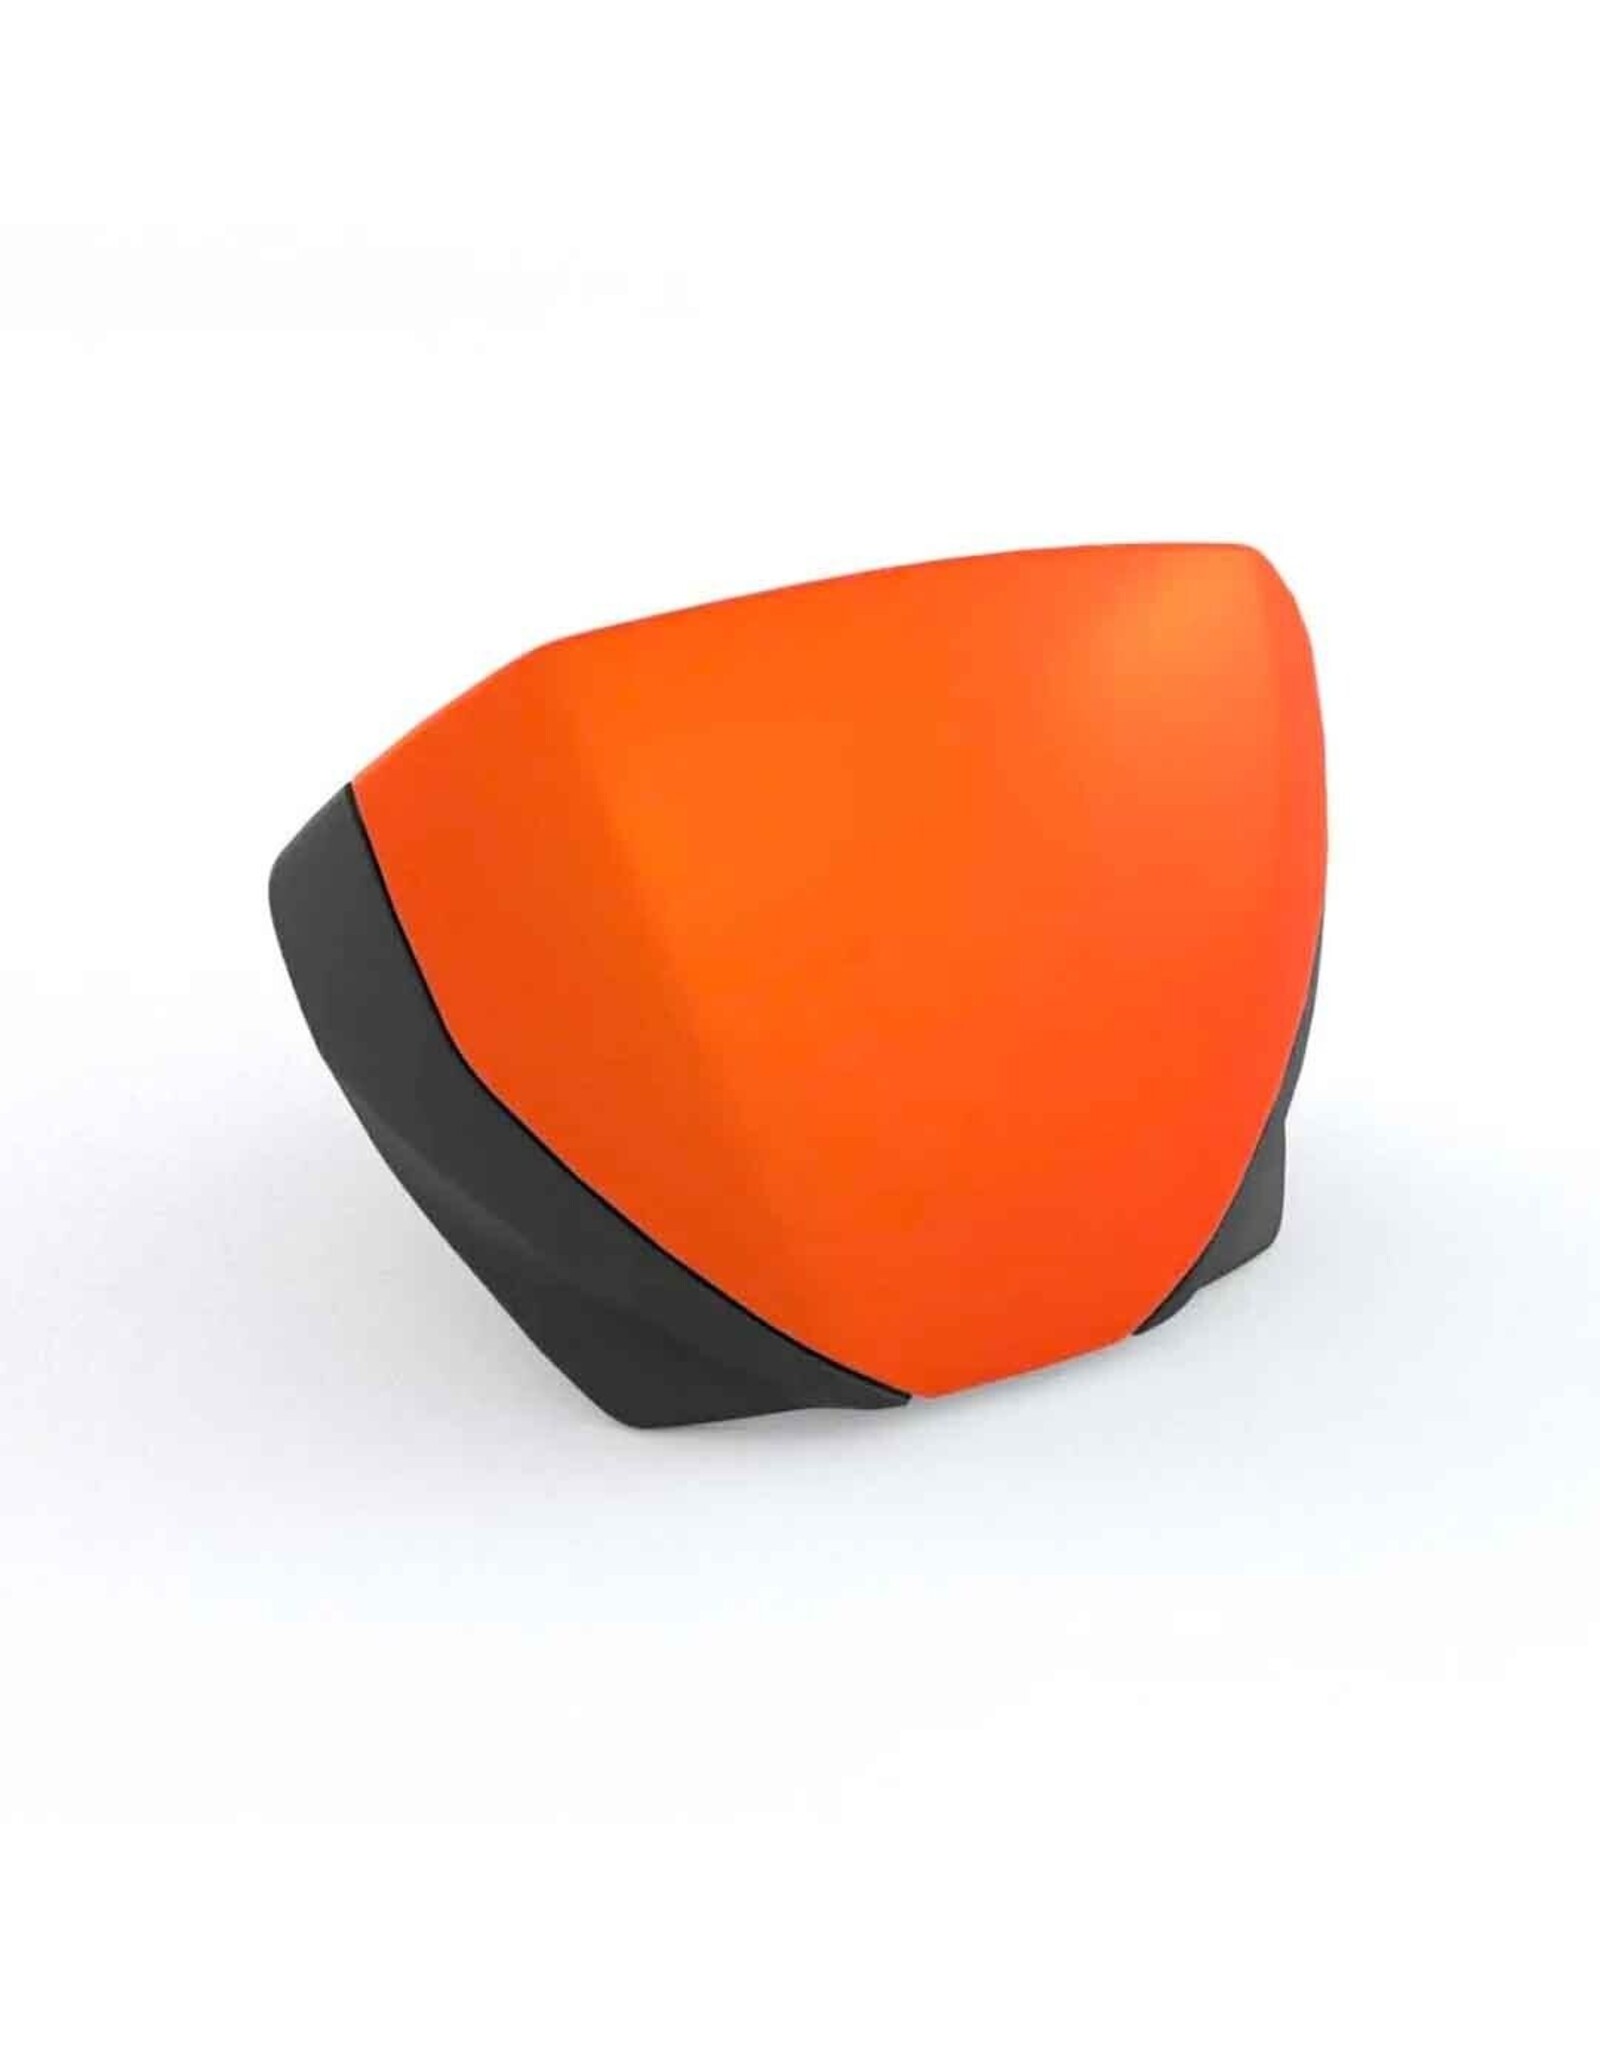 Flyscreen Matt Baja Orange